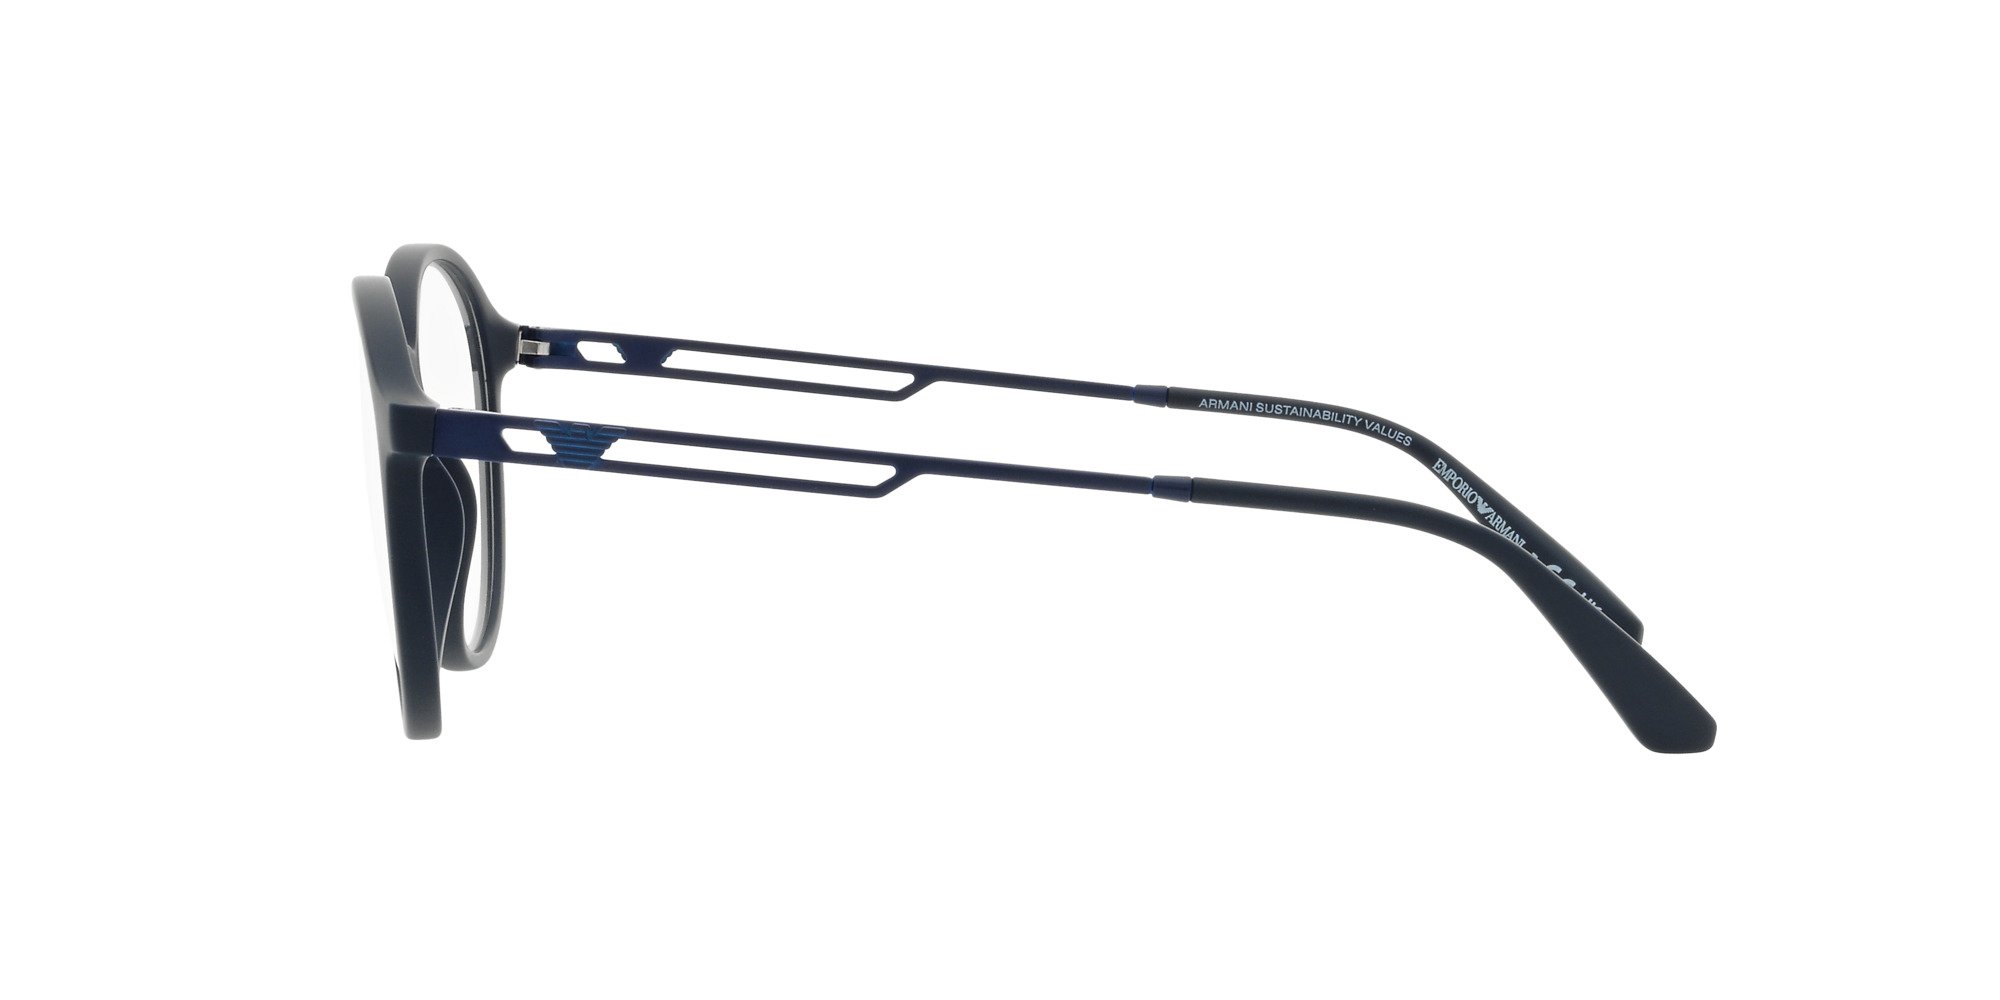 Das Bild zeigt die Korrektionsbrille EA3225 5088 von der Marke Emporio Armani in Blau.